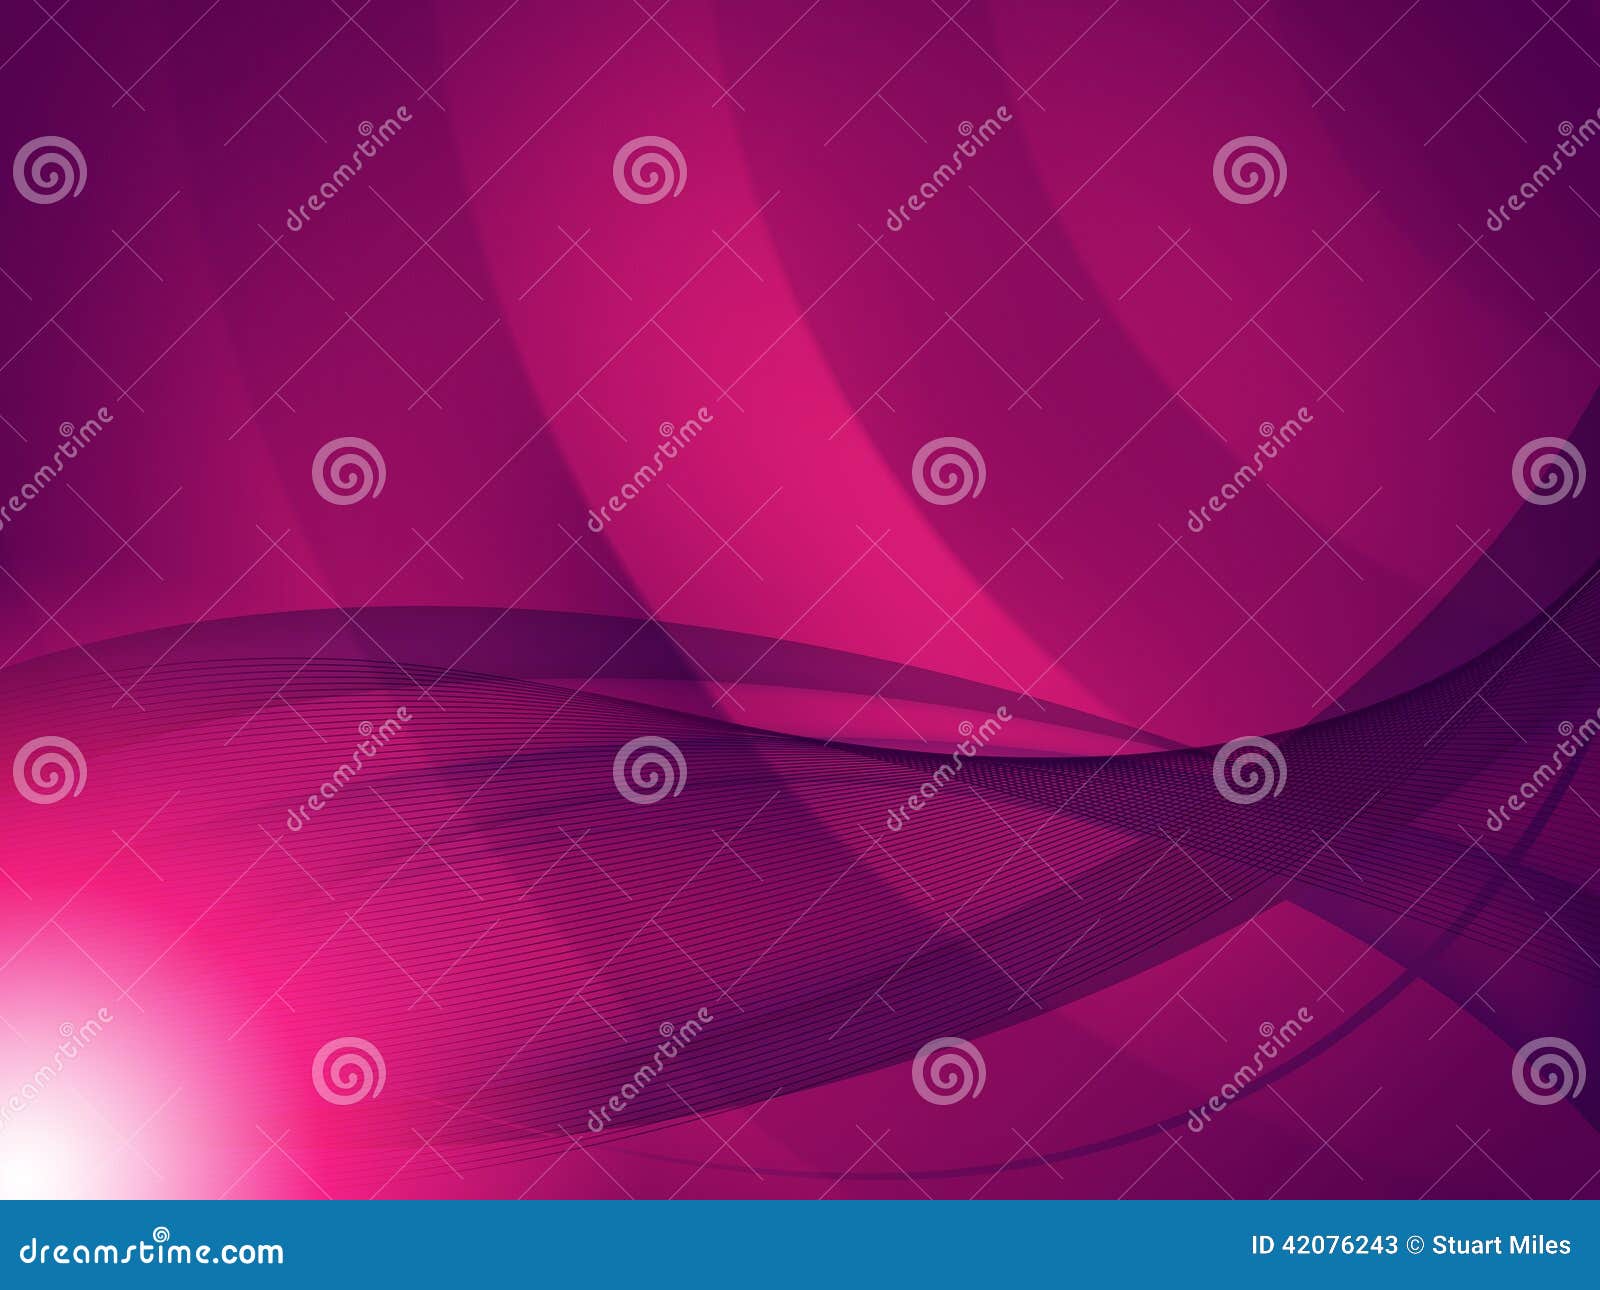 Pink Background Meaning gambar ke 9